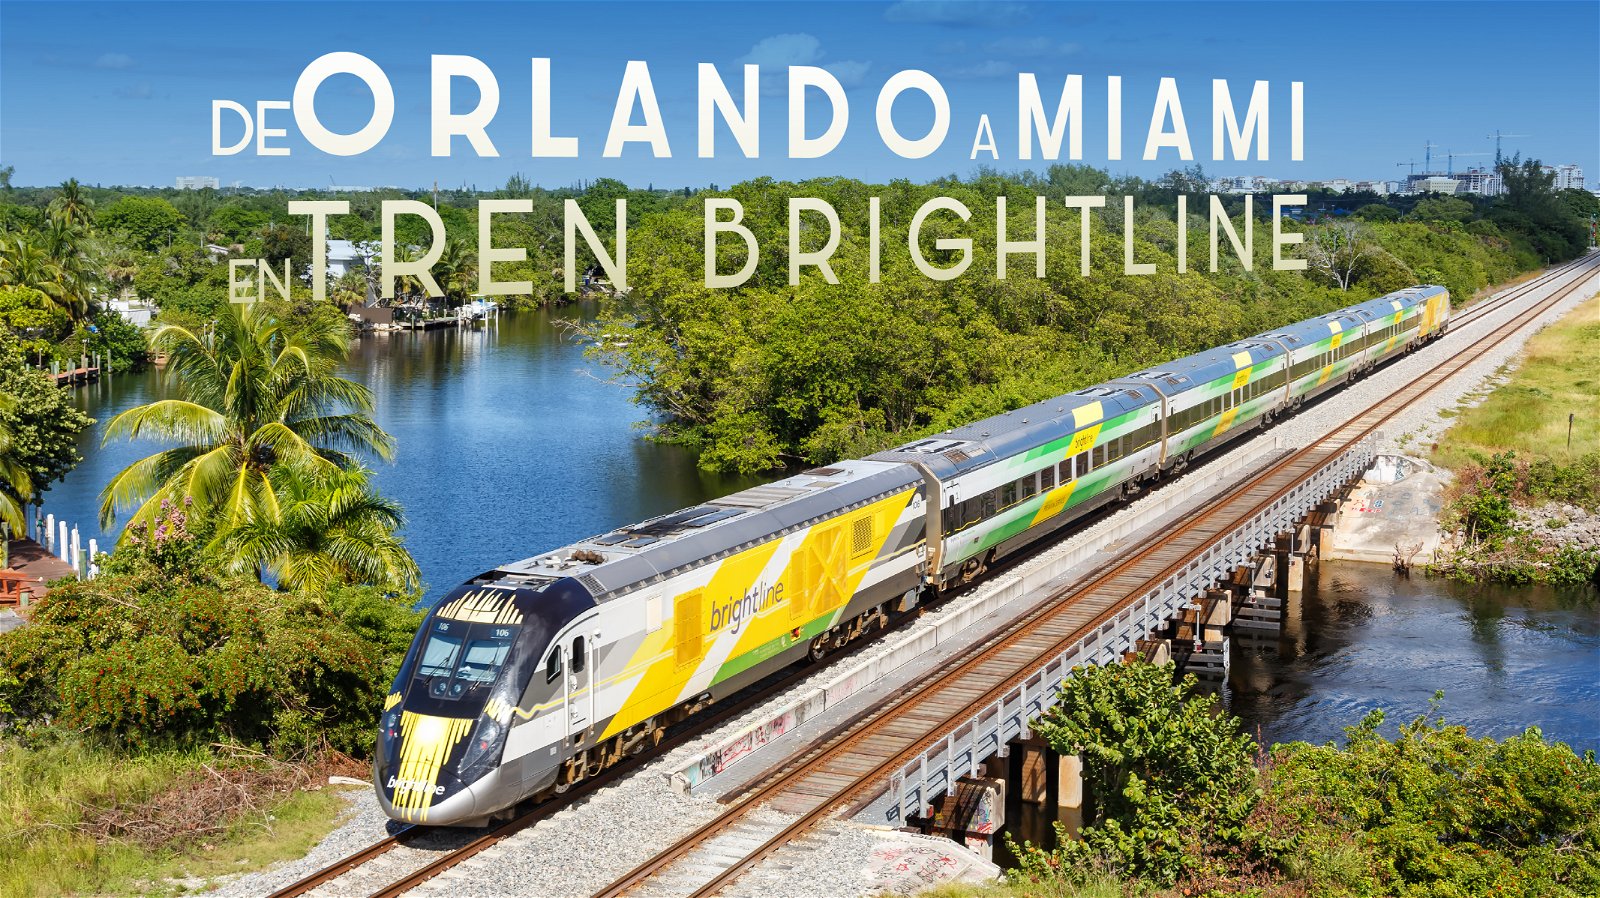 De Orlando a Miami En Tren Brightline